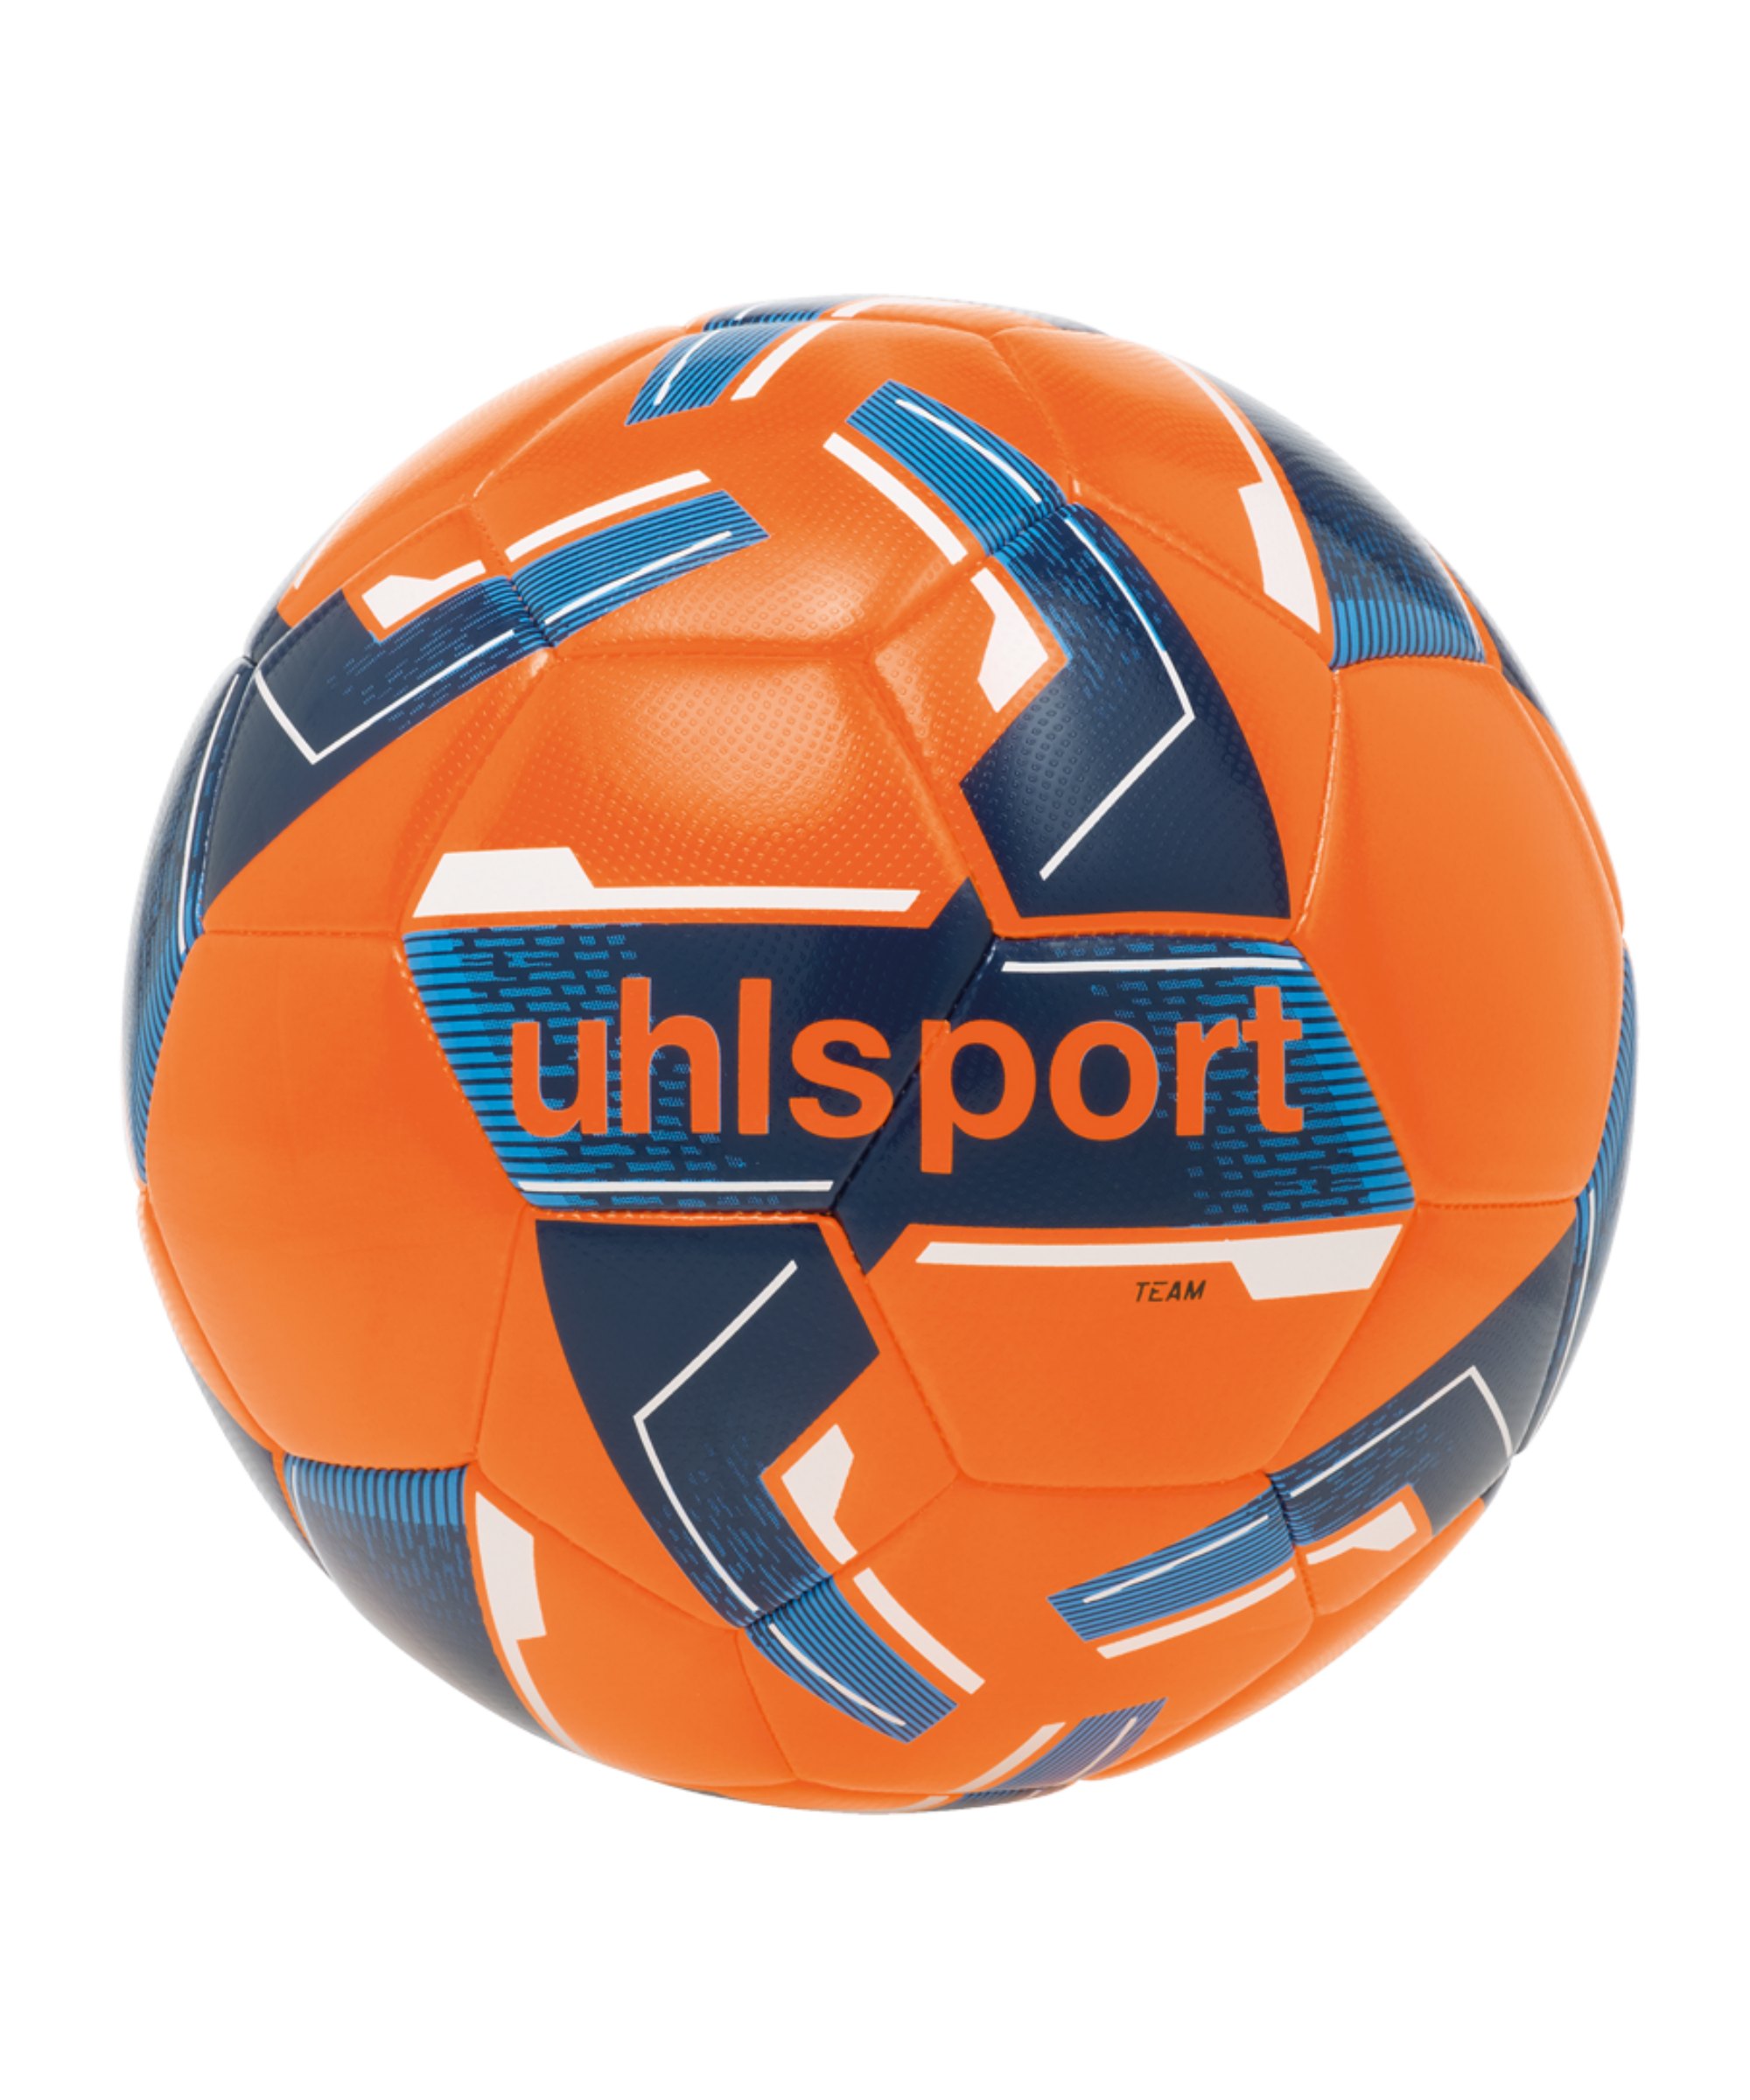 Uhlsport Team Trainingsball Gr. 5 Orange Blau F02 - orange